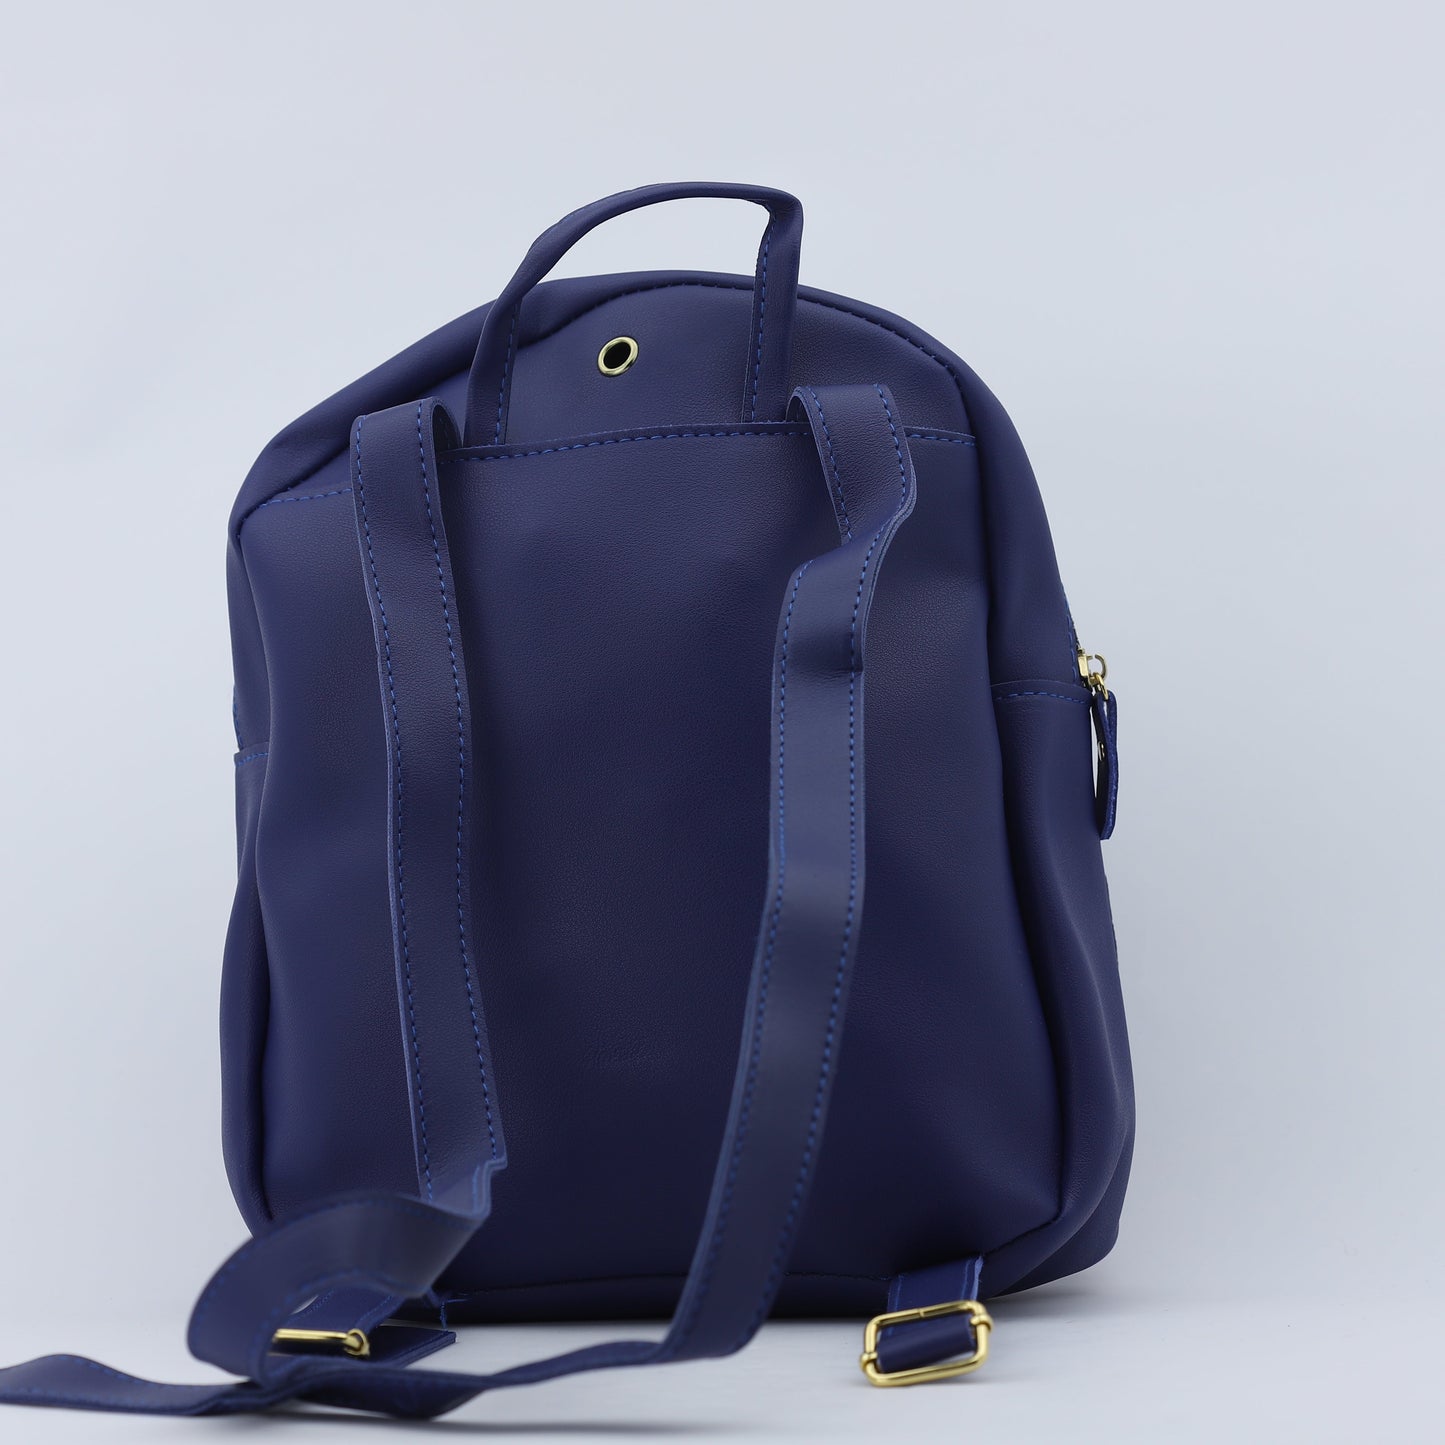 Smart Backpack Bag